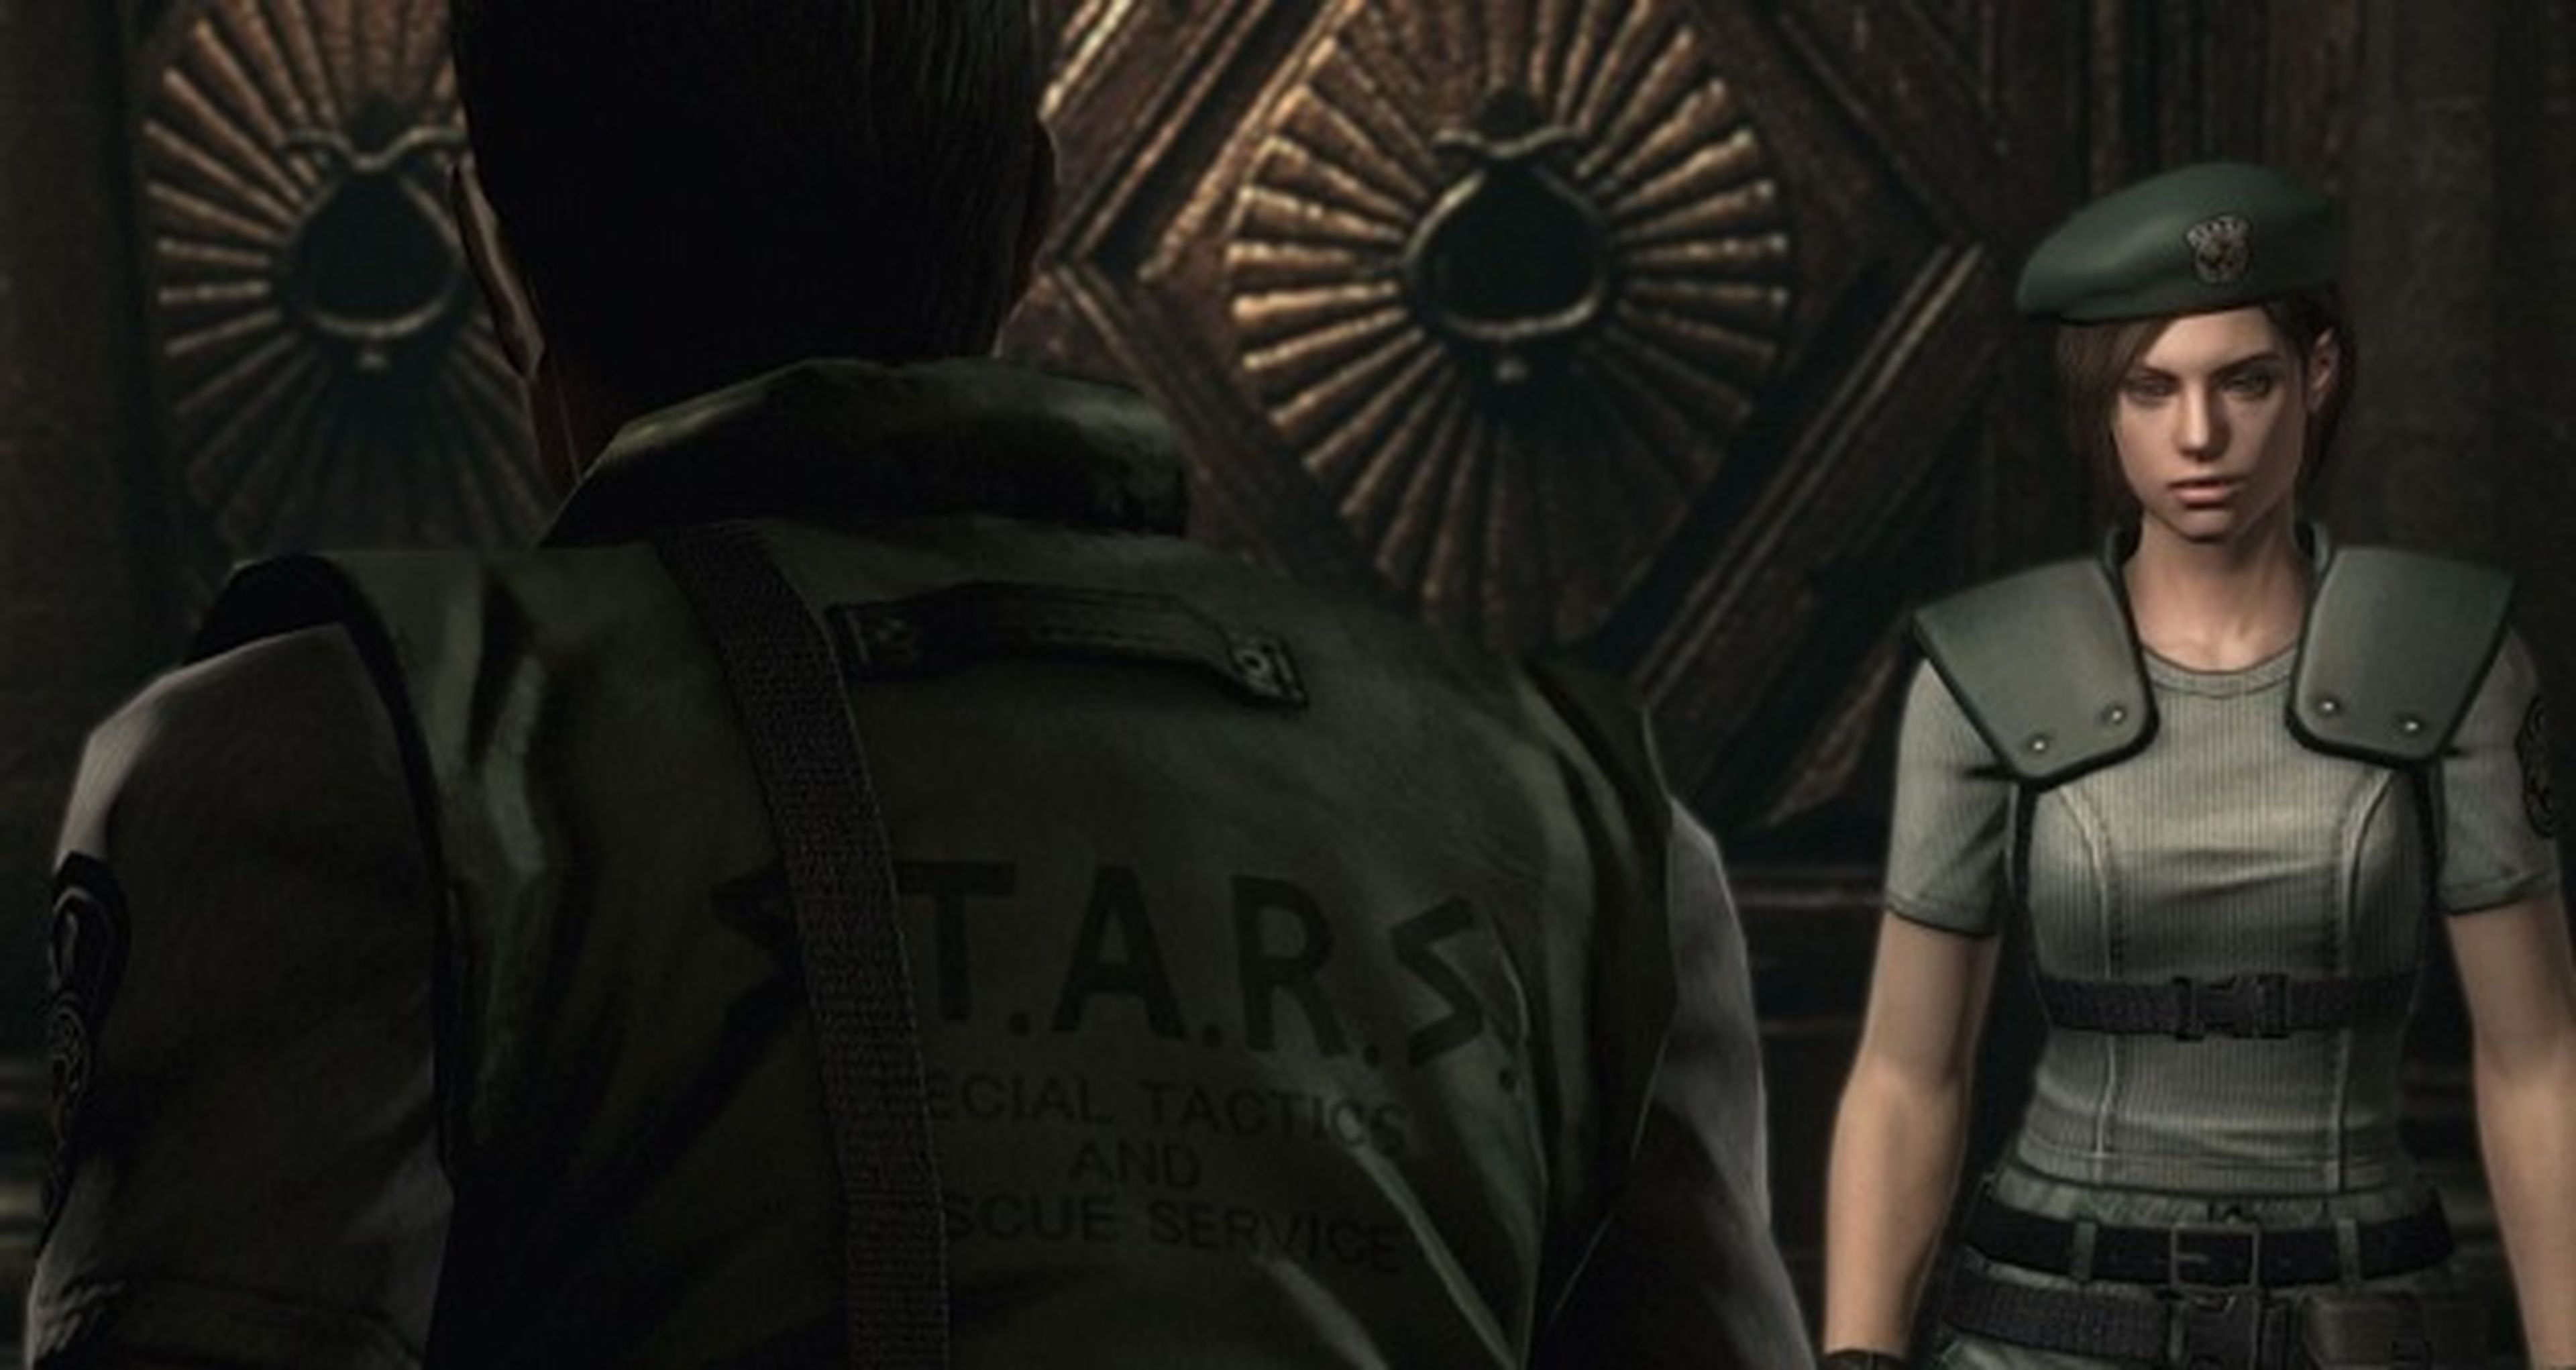 Imágenes comparativas de Resident Evil HD Remaster con la versión de Wii